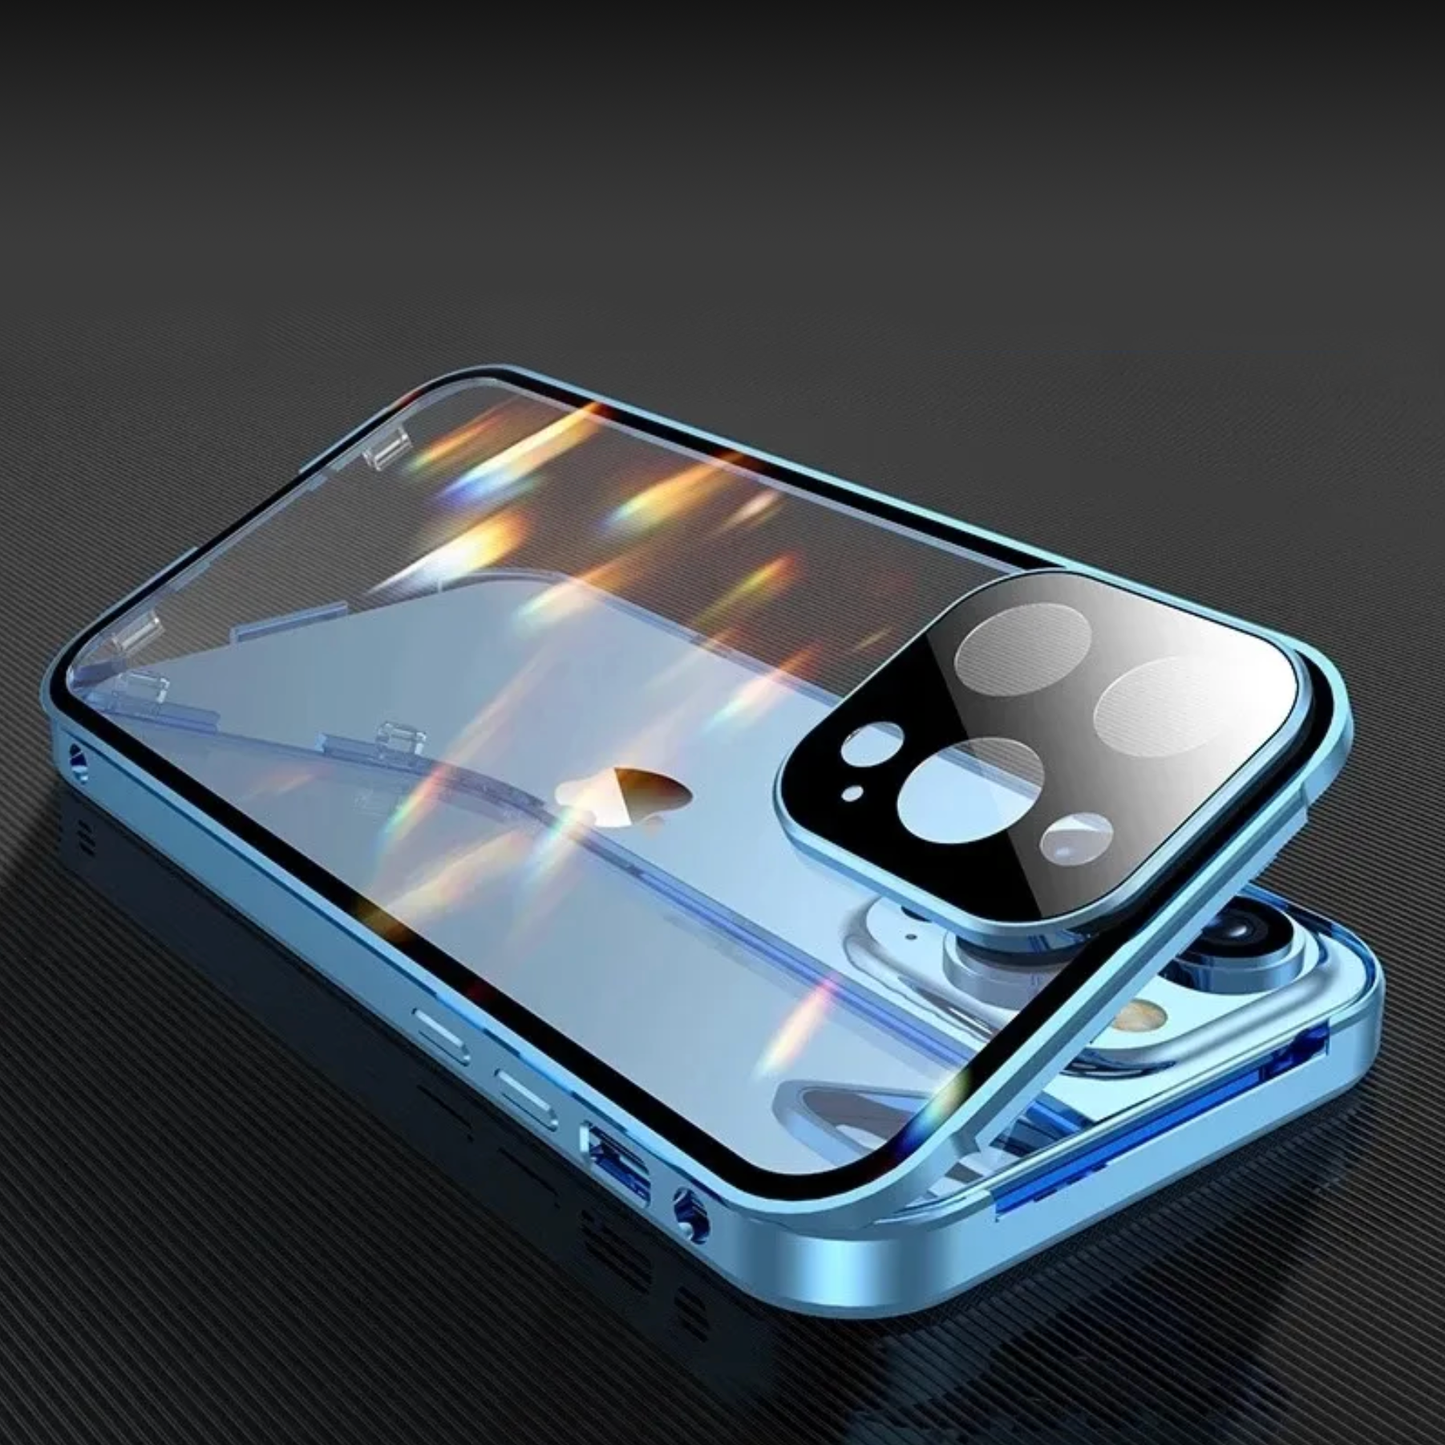 Doppelseitige Glas-Schnappverschlusshülle für iPhones